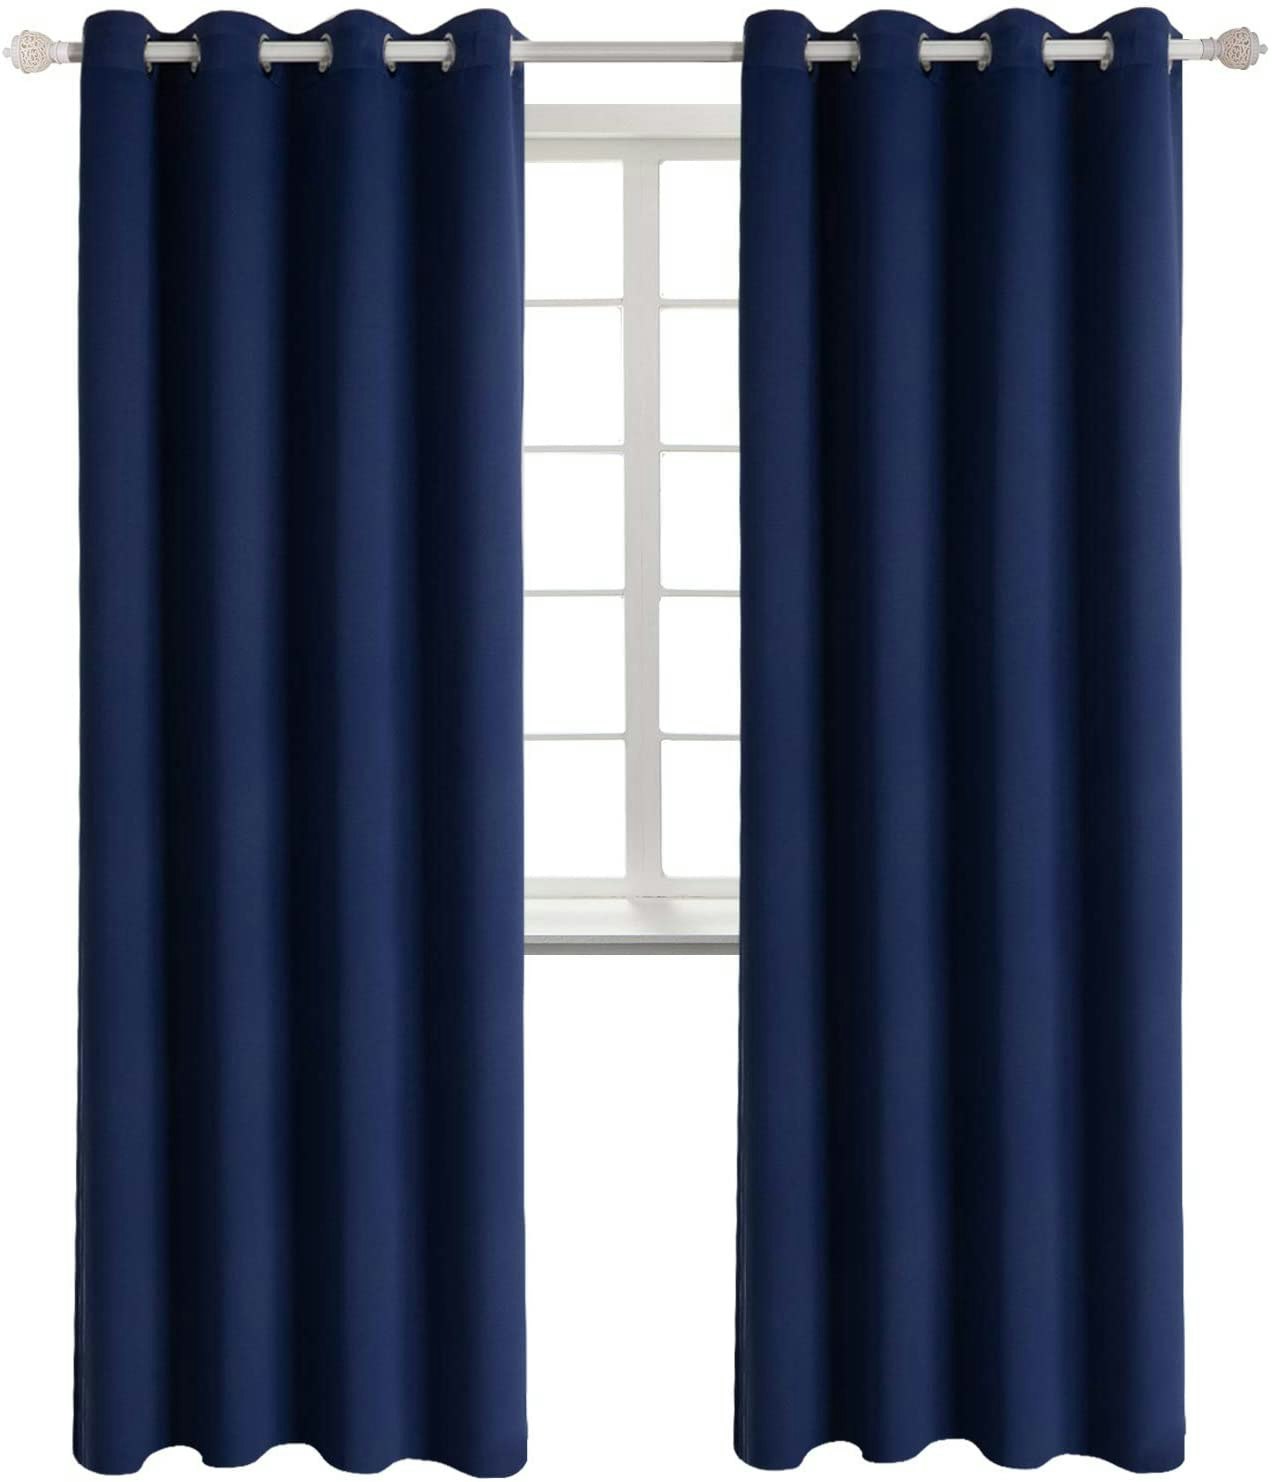 Gardinset 2-pack inkl gardinomtag | Två längder Mörkläggningsgardiner Öljettgardiner Navy Marinblå gardin